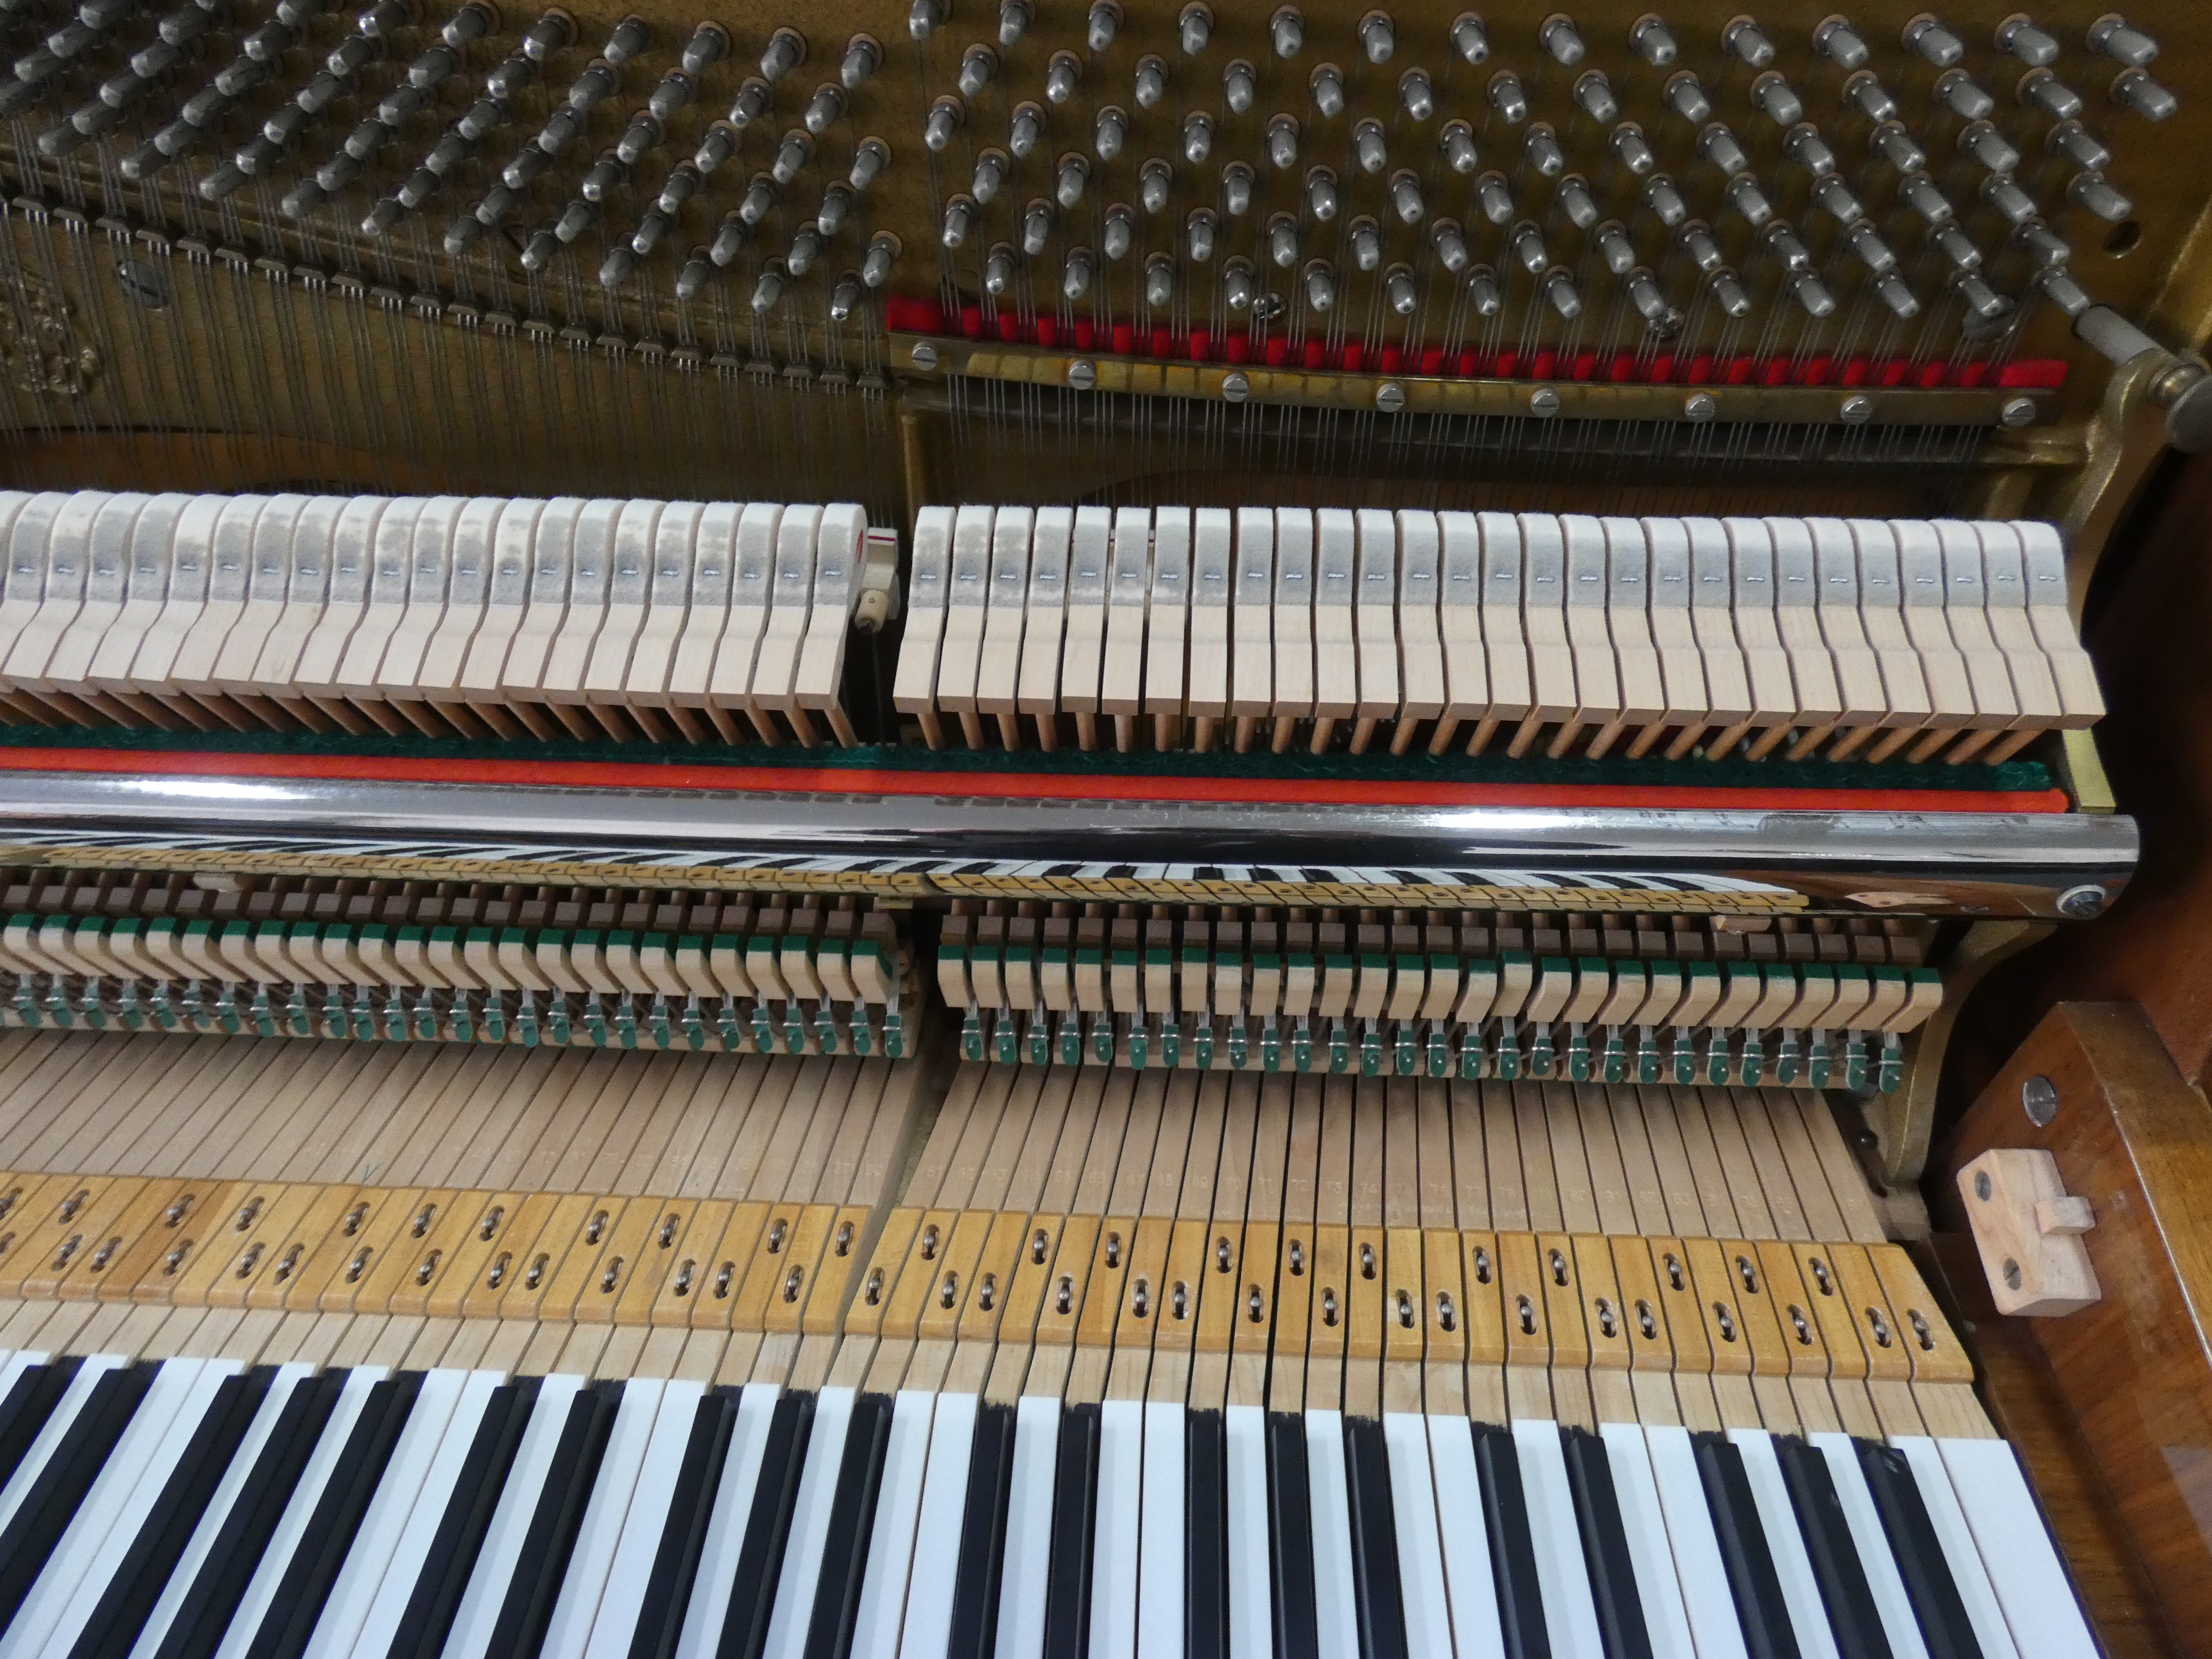 A Sauter Klavier von Klavierbaumeisterin aus Aachen